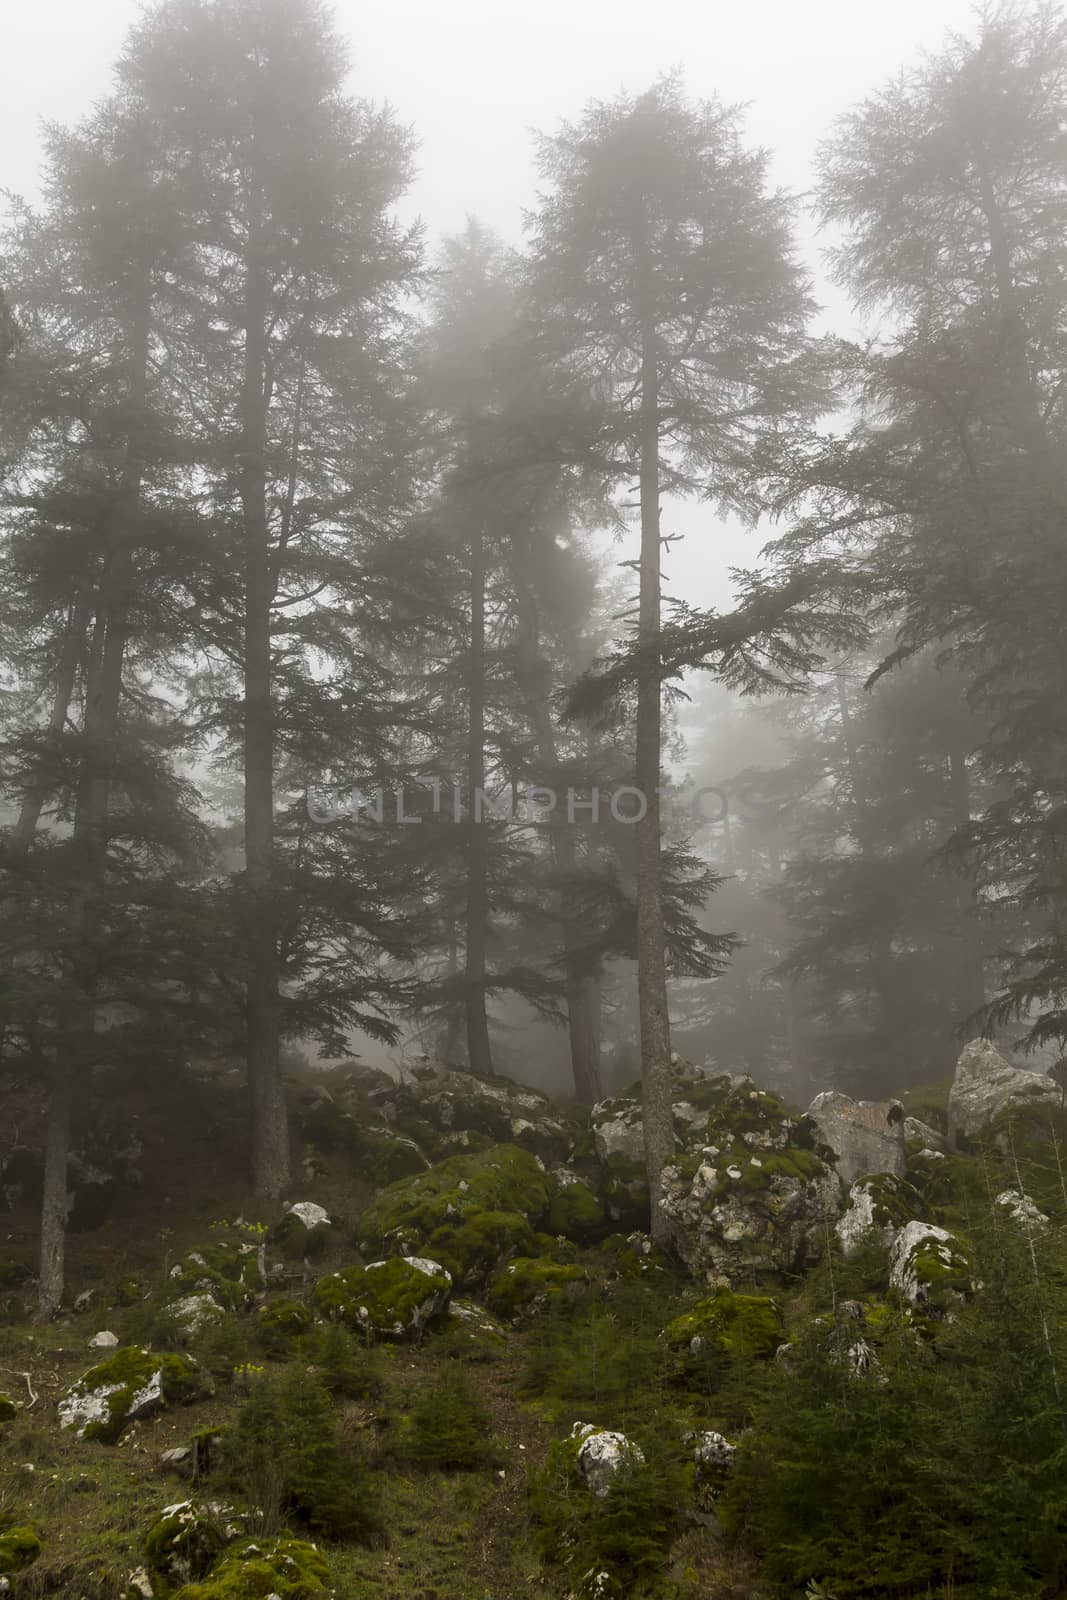 Cedar Forest in Fog with Dusk light